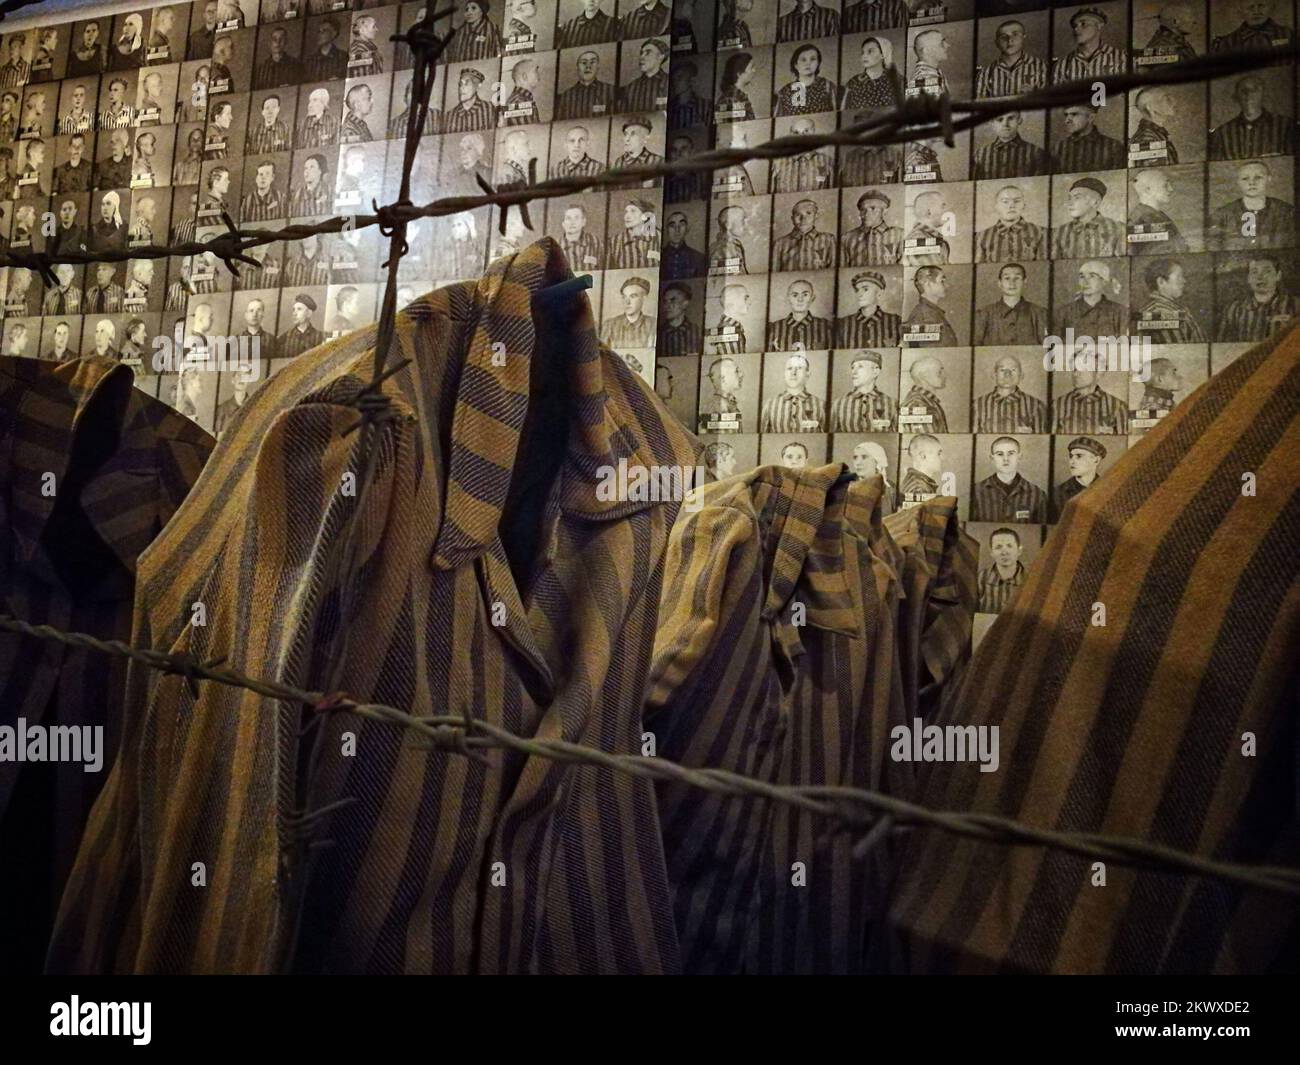 Camp de concentration d'Auschwitz, un réseau de camps de concentration allemands nazis et de camps d'extermination construits et exploités par le troisième Reich dans les zones polonaises annexées par l'Allemagne nazie pendant la Seconde Guerre mondiale Auschwitz I a été construit pour accueillir des prisonniers politiques polonais, qui ont commencé à arriver en mai 1940. La première extermination de prisonniers a eu lieu en septembre 1941, et Auschwitz II–Birkenau est devenu un site majeur de la solution finale nazie à la question juive. Au moins 1,1 millions de prisonniers sont morts à Auschwitz, dont environ 90 pour cent sont juifs; environ 1 juifs sur 6 ont été tués dans le Banque D'Images